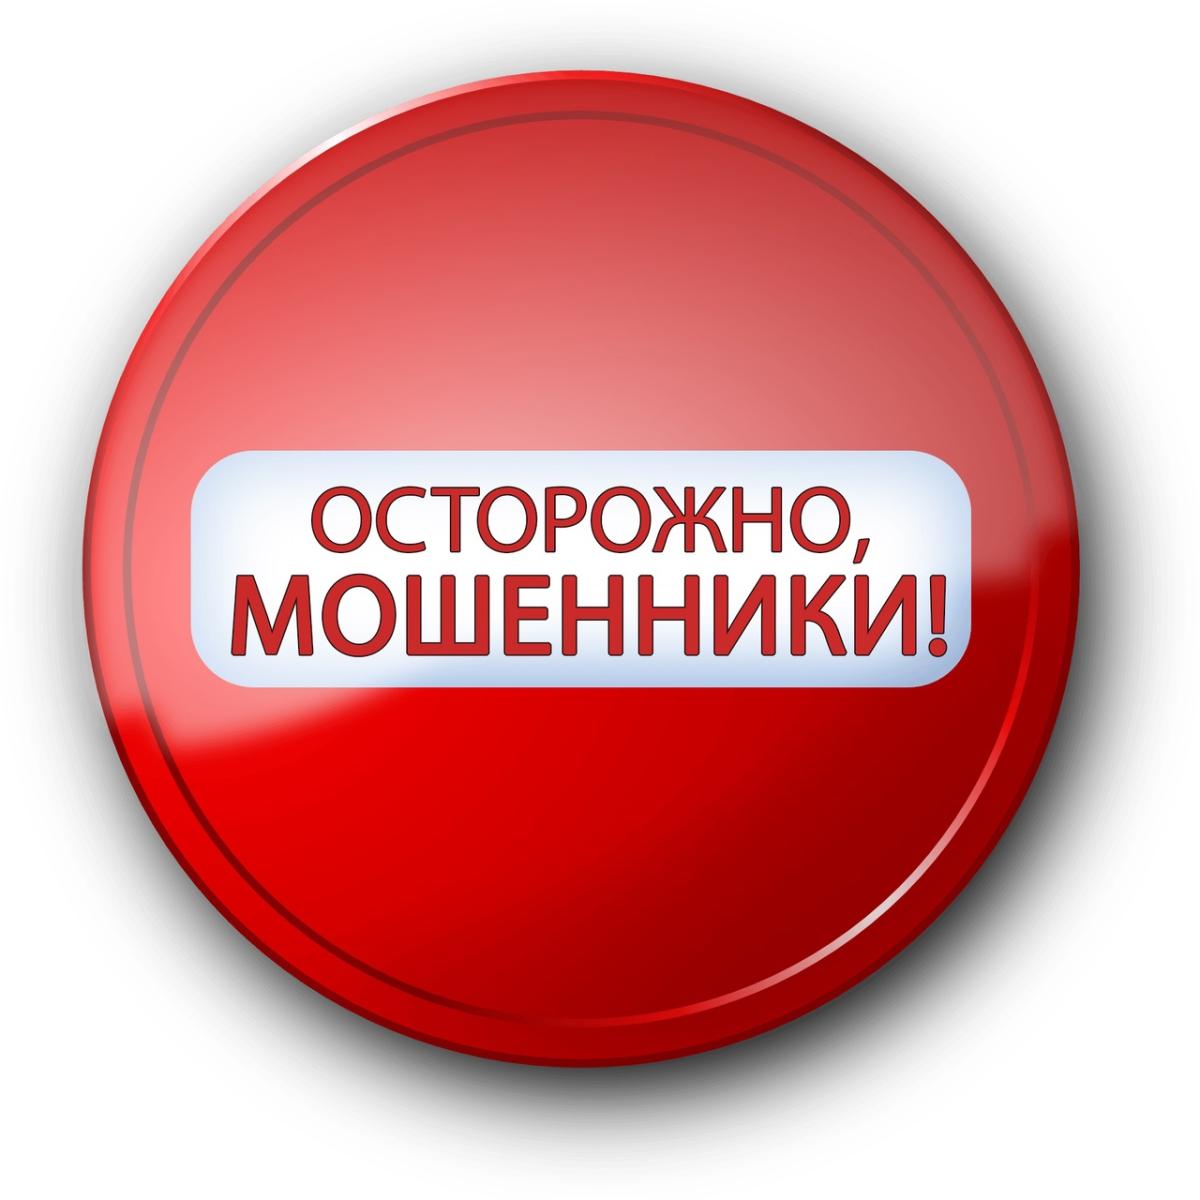 За две недели жители Мордовии обогатили мошенников более чем на 13 миллионов рублей